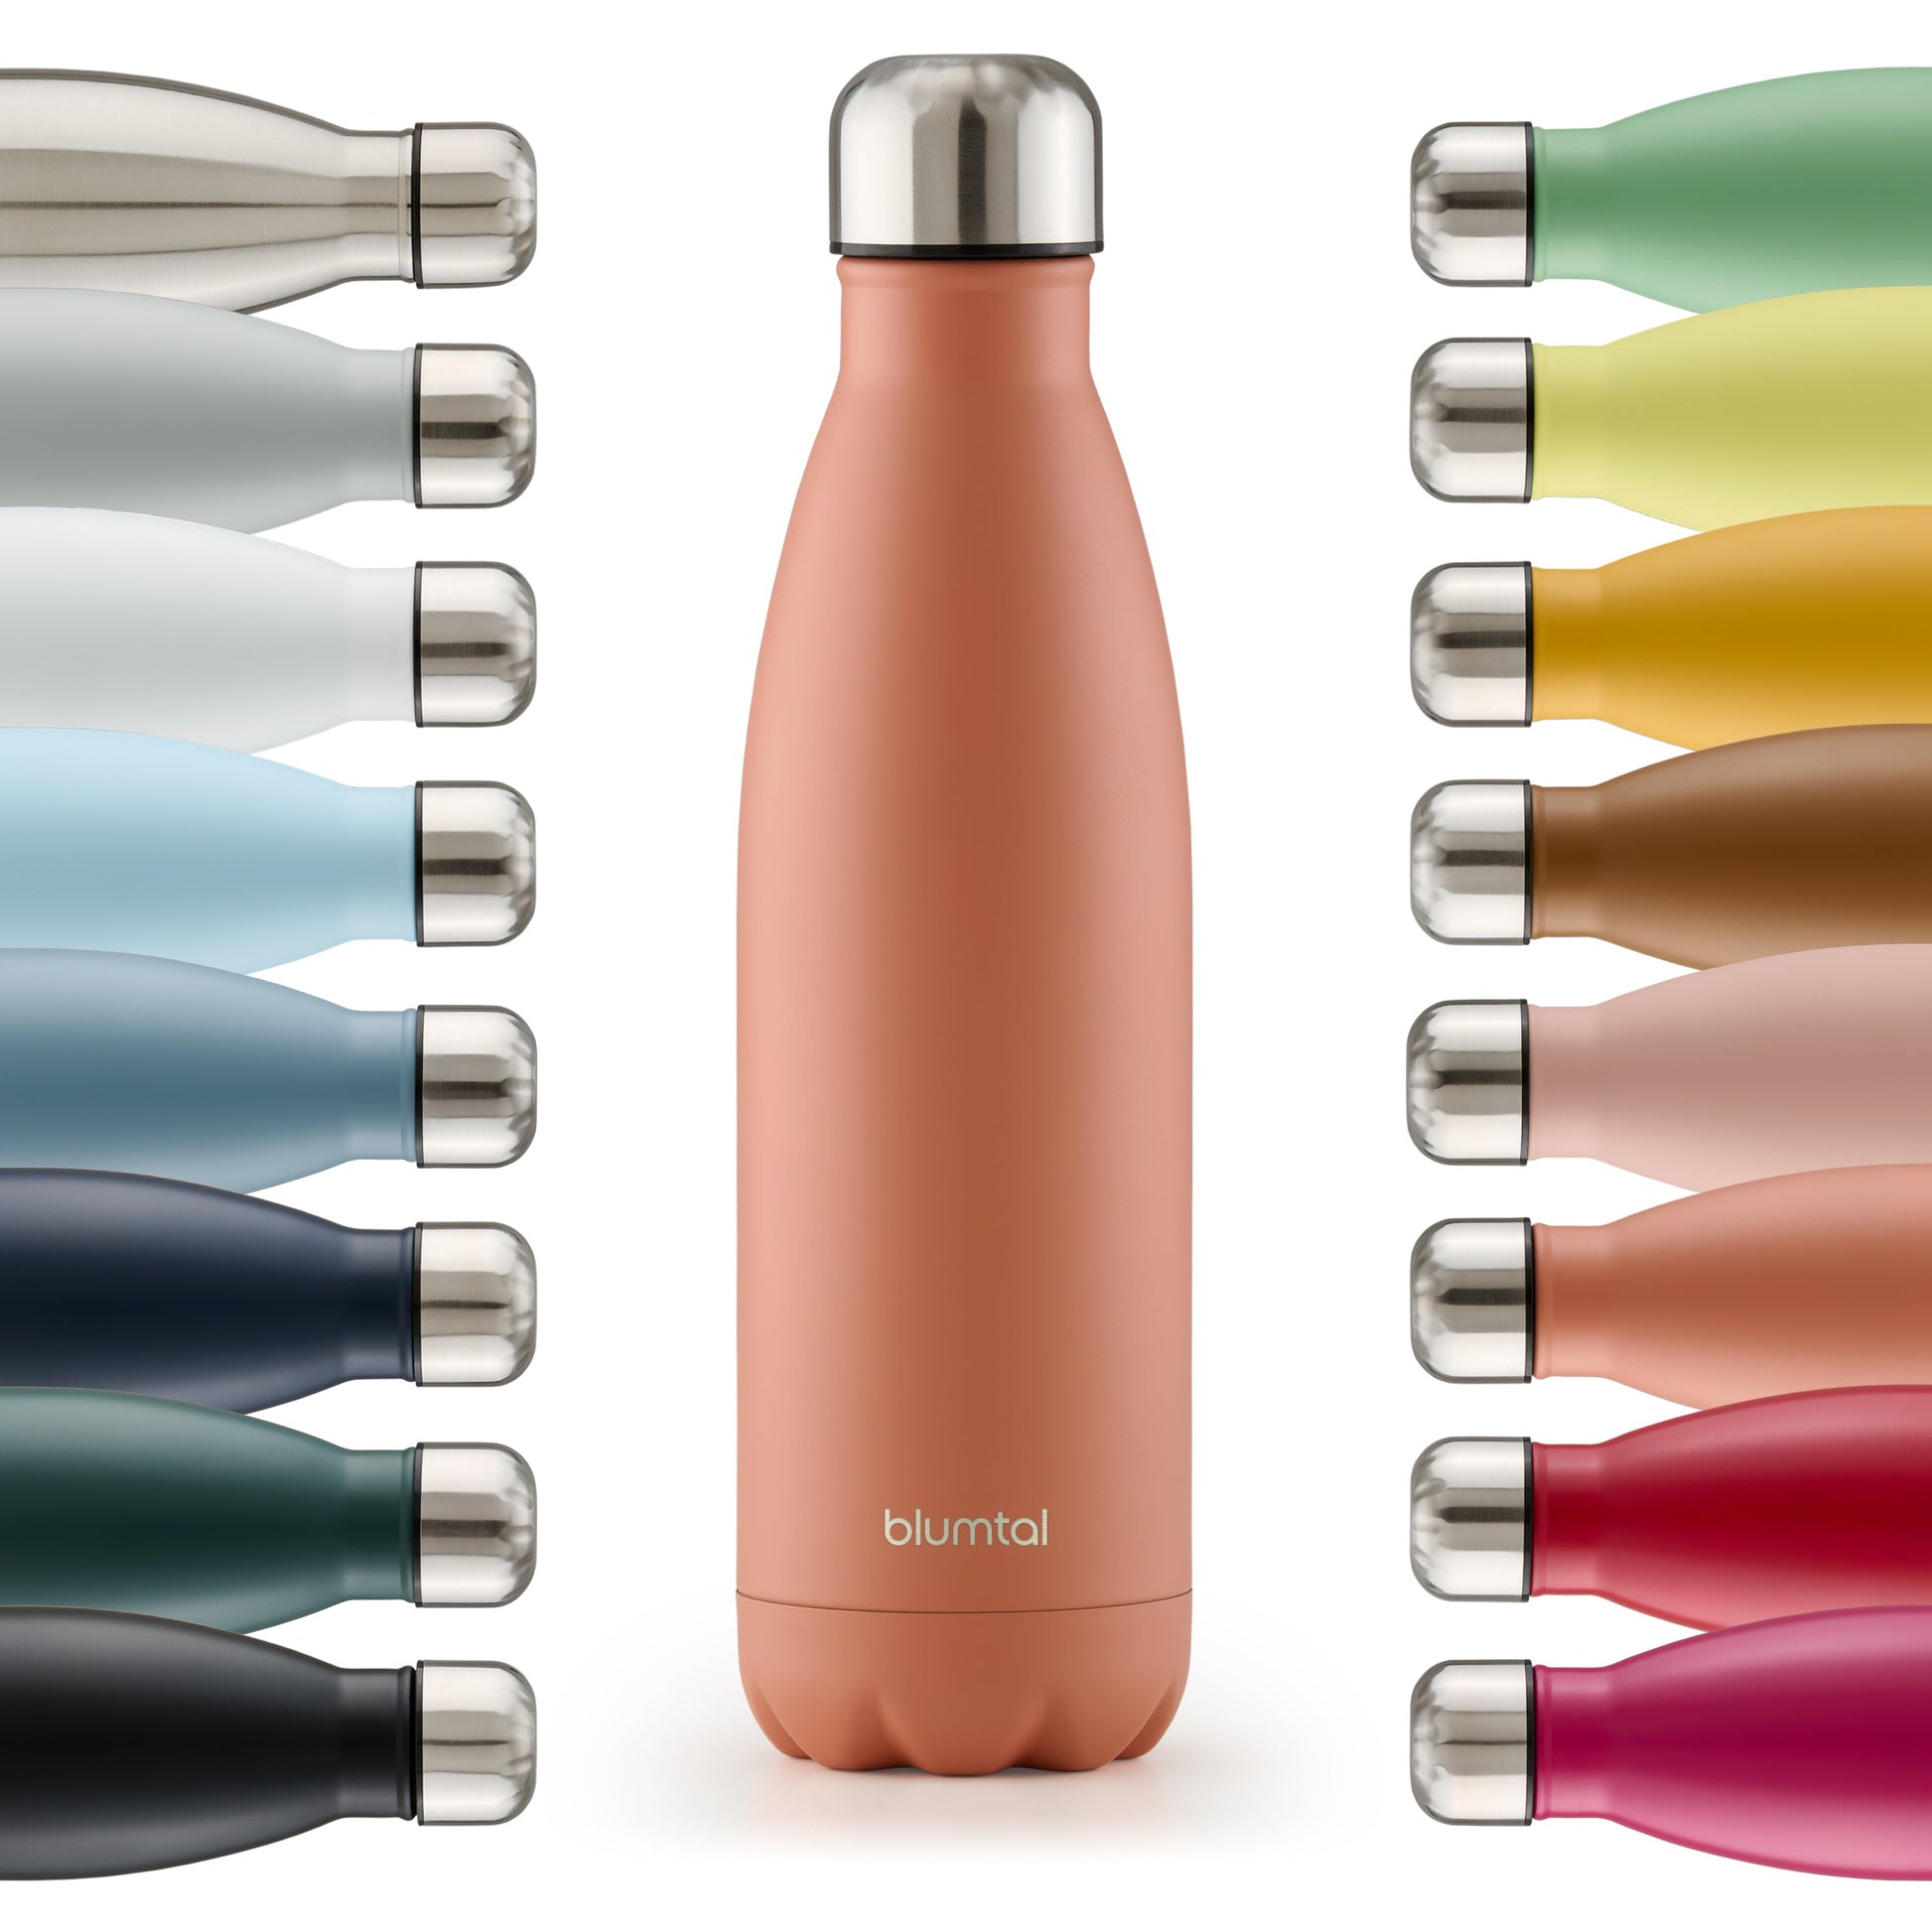 Farbige Auswahl an isolierten Edelstahl-Trinkflaschen von blumtal in einer Reihe angeordnet mit Fokus auf eine vorderseitige mineral rot farbene Flasche.